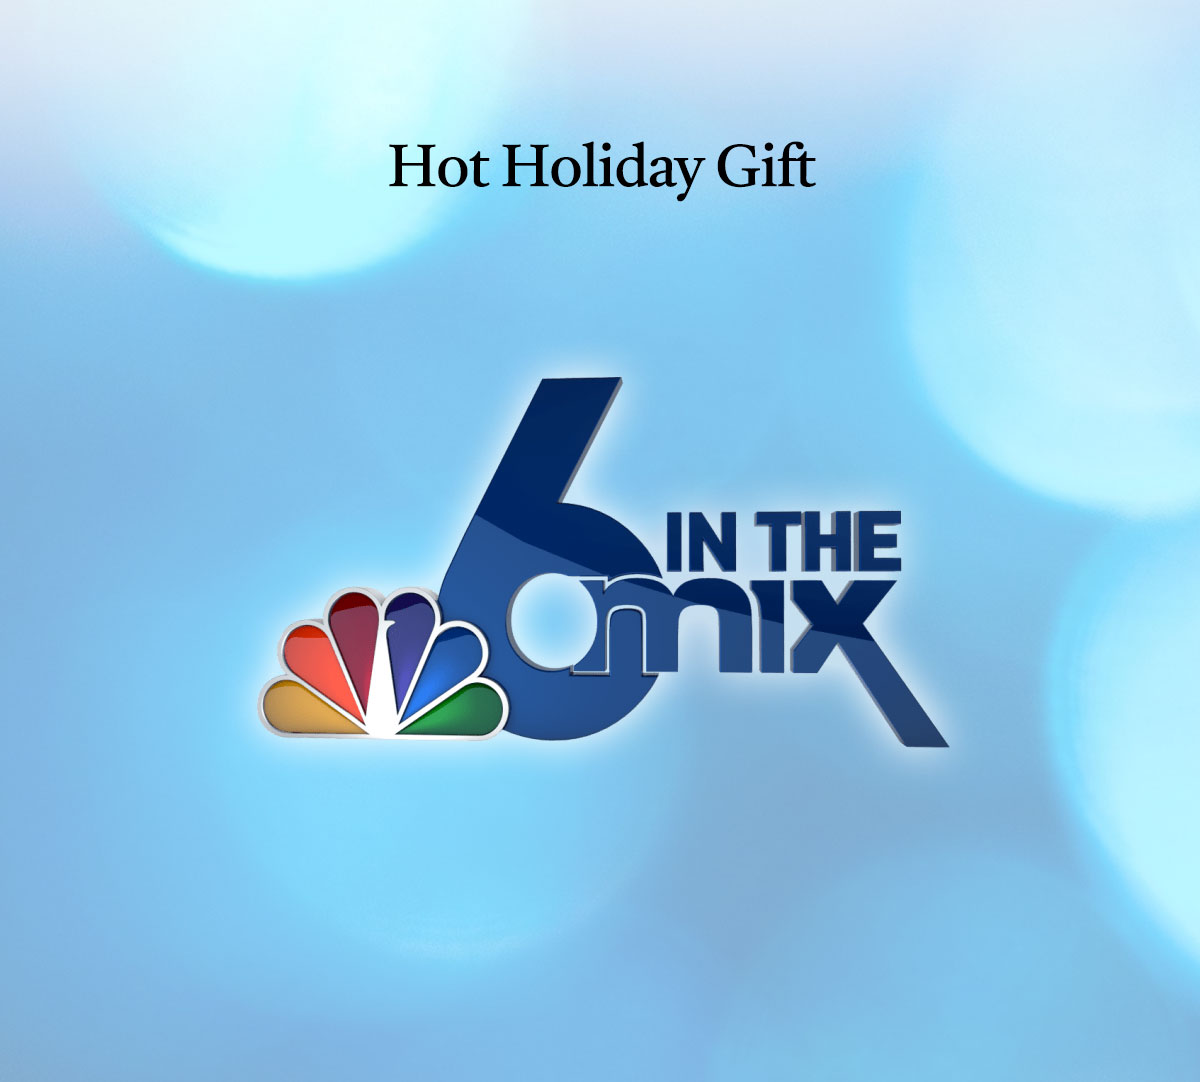 Hot Holiday Gift • News